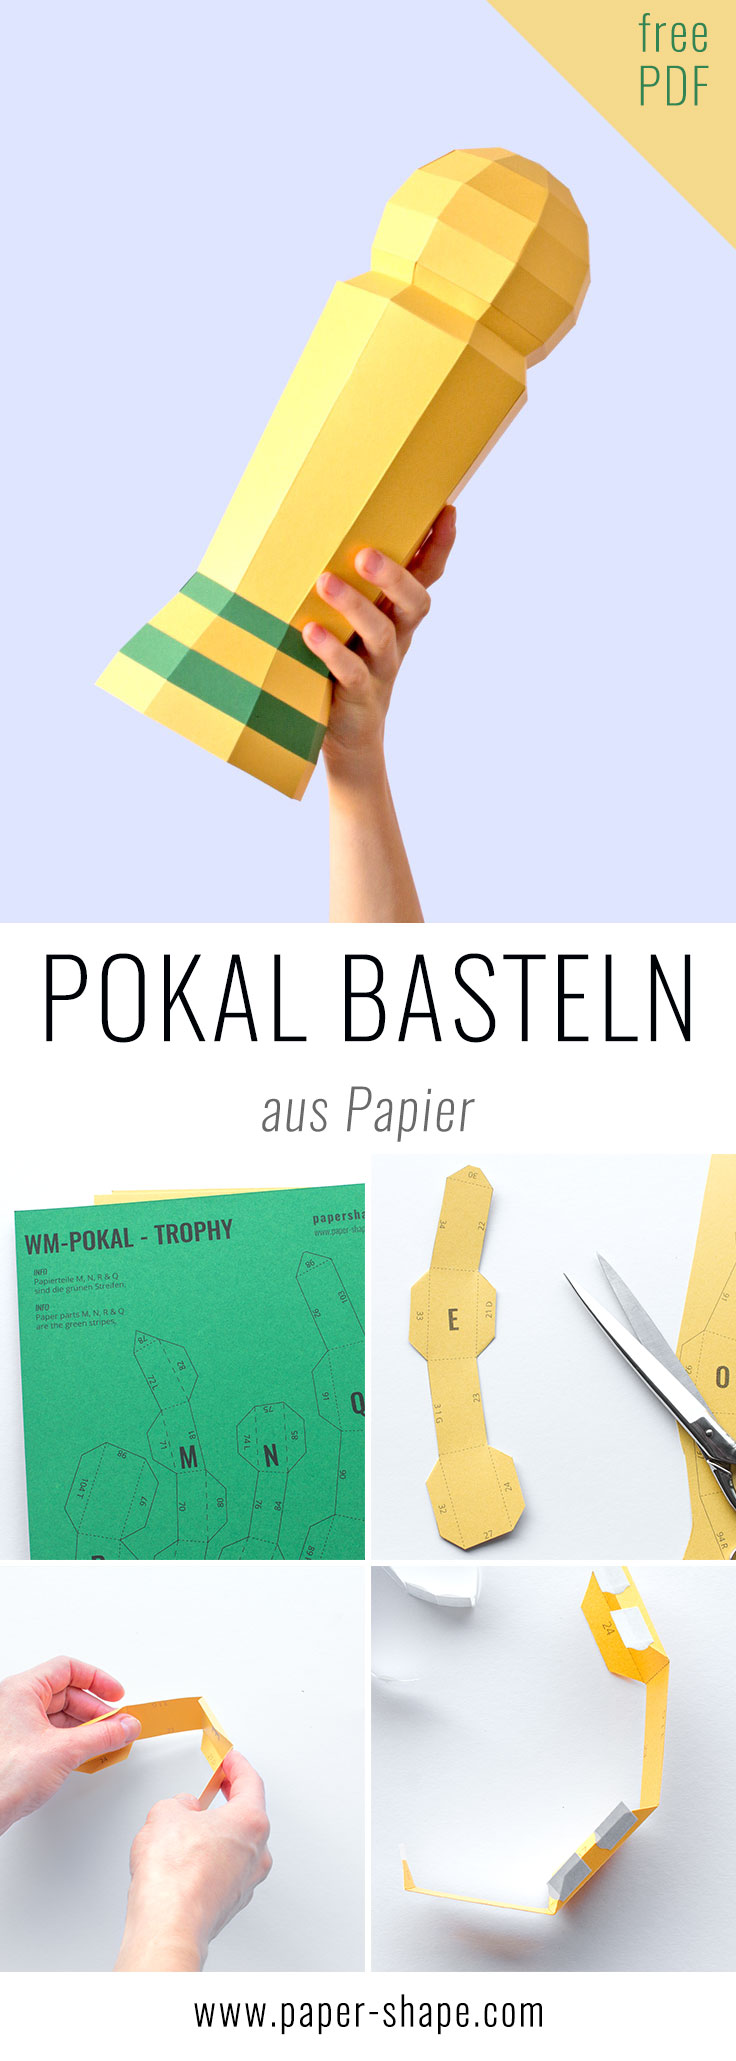 Fussball-DIY basteln aus Papier zur WM / PaperShape #basteln #diy #papier #partyideas